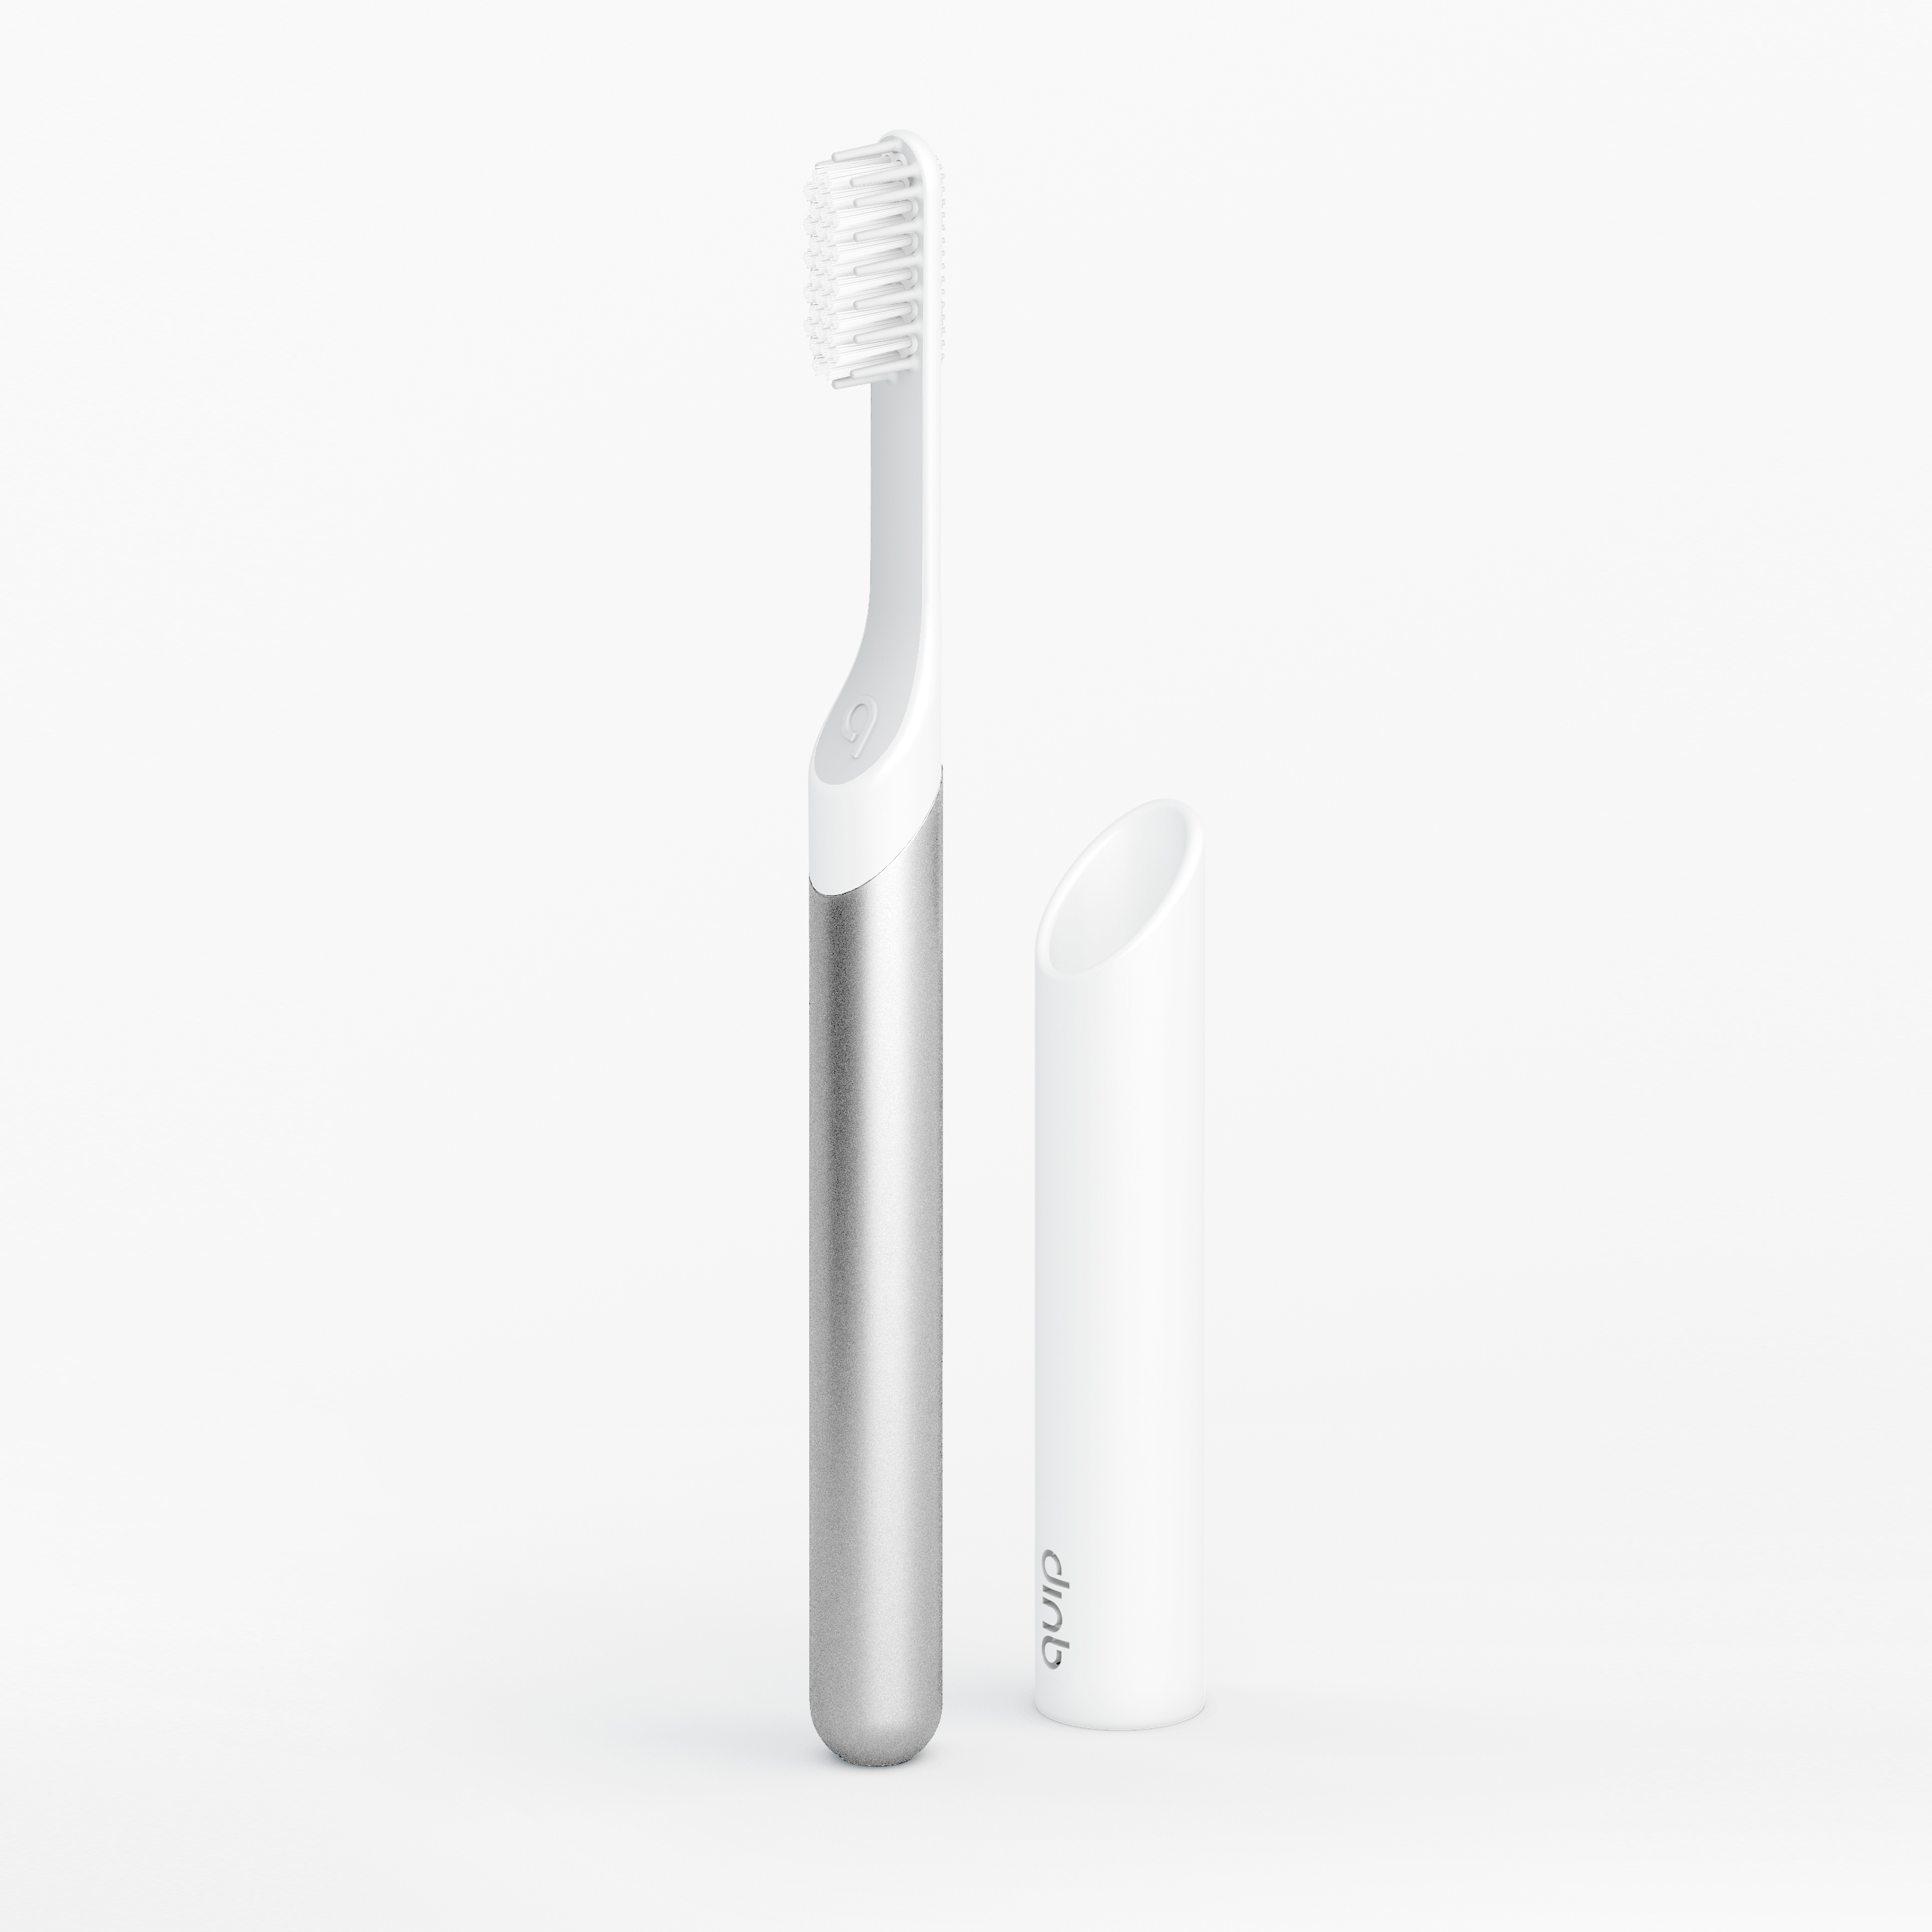 Silver metal electric toothbrush detail